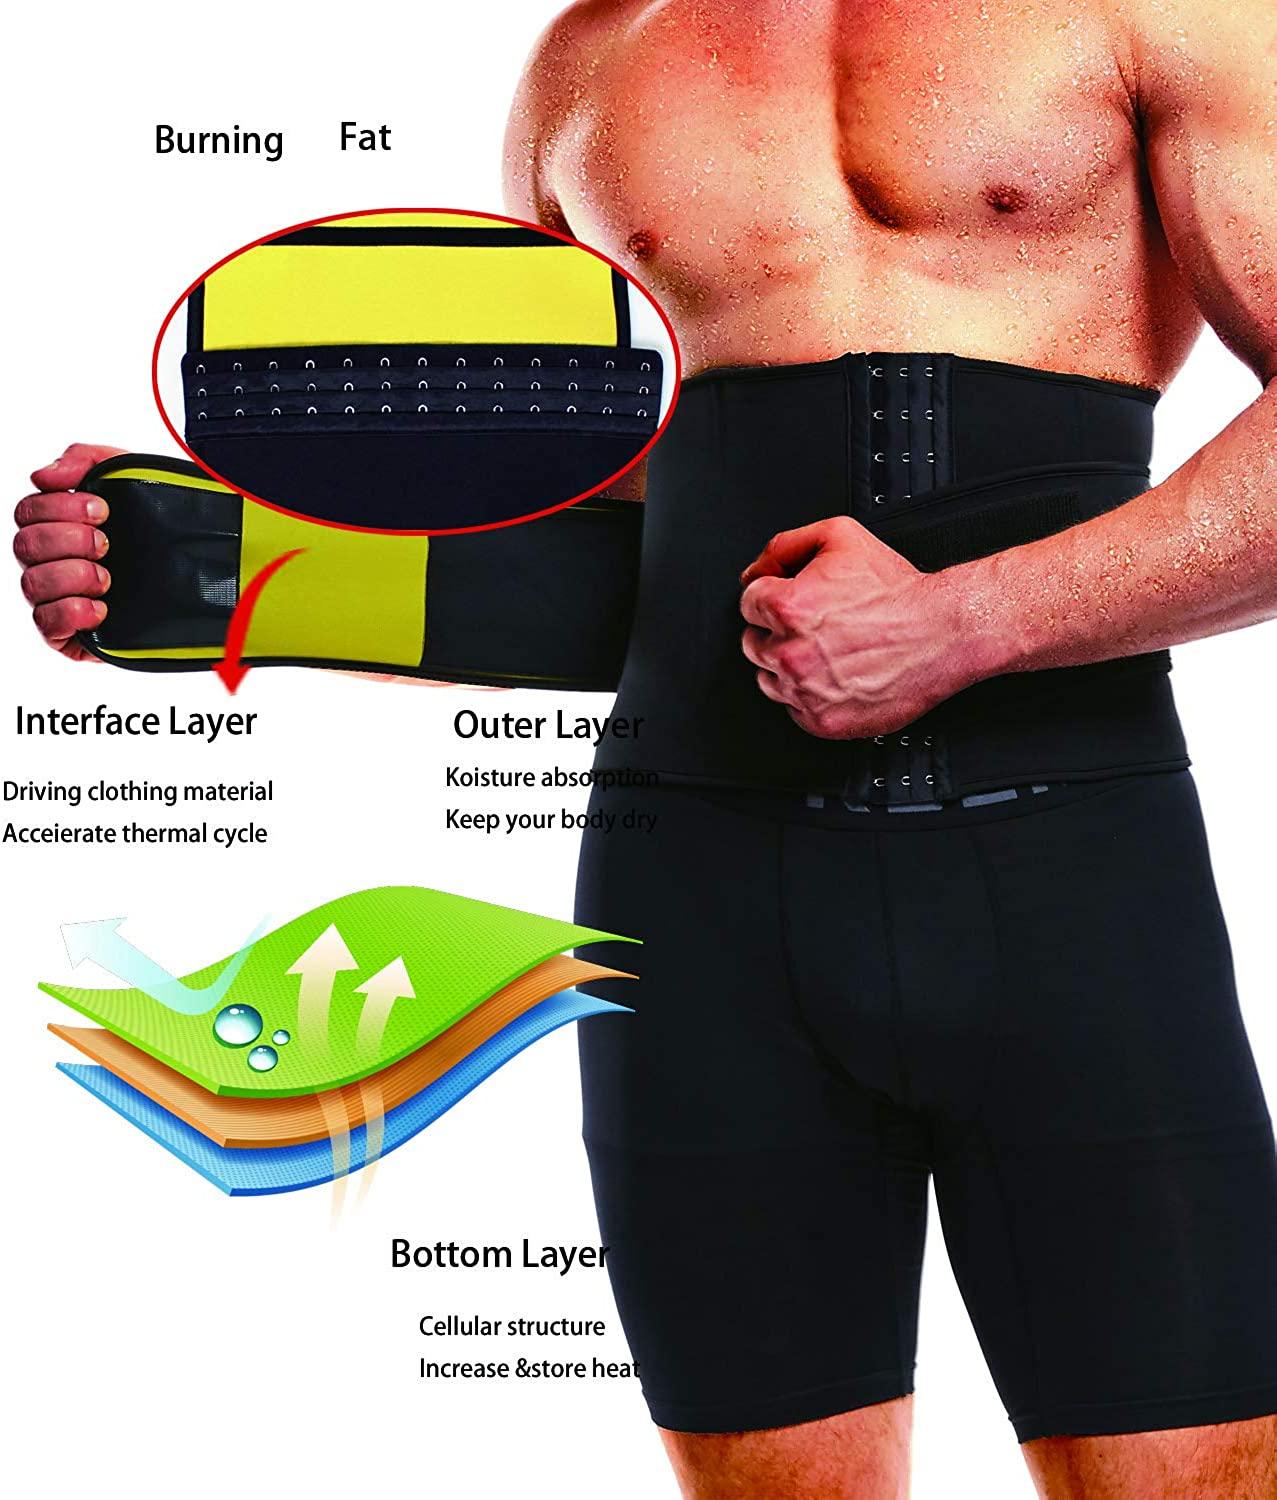 NINGMI Waist Trainer for Men Sweat Belt - Sauna Trimmer Stomach